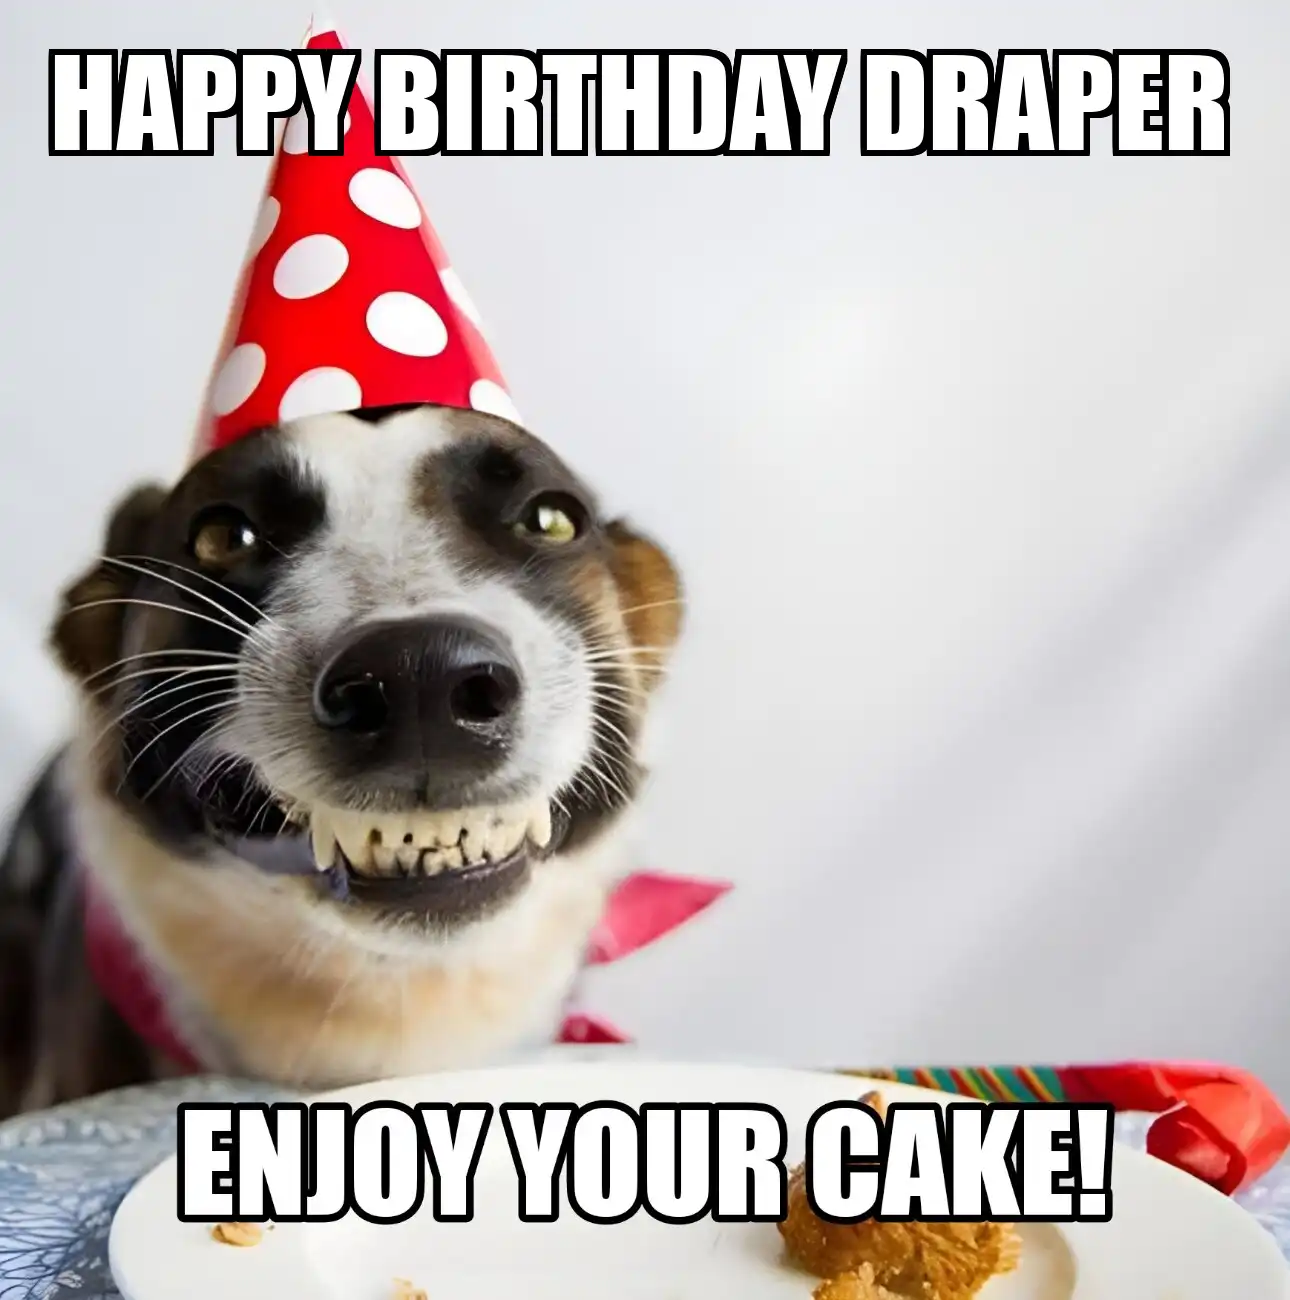 Happy Birthday Draper Enjoy Your Cake Dog Meme